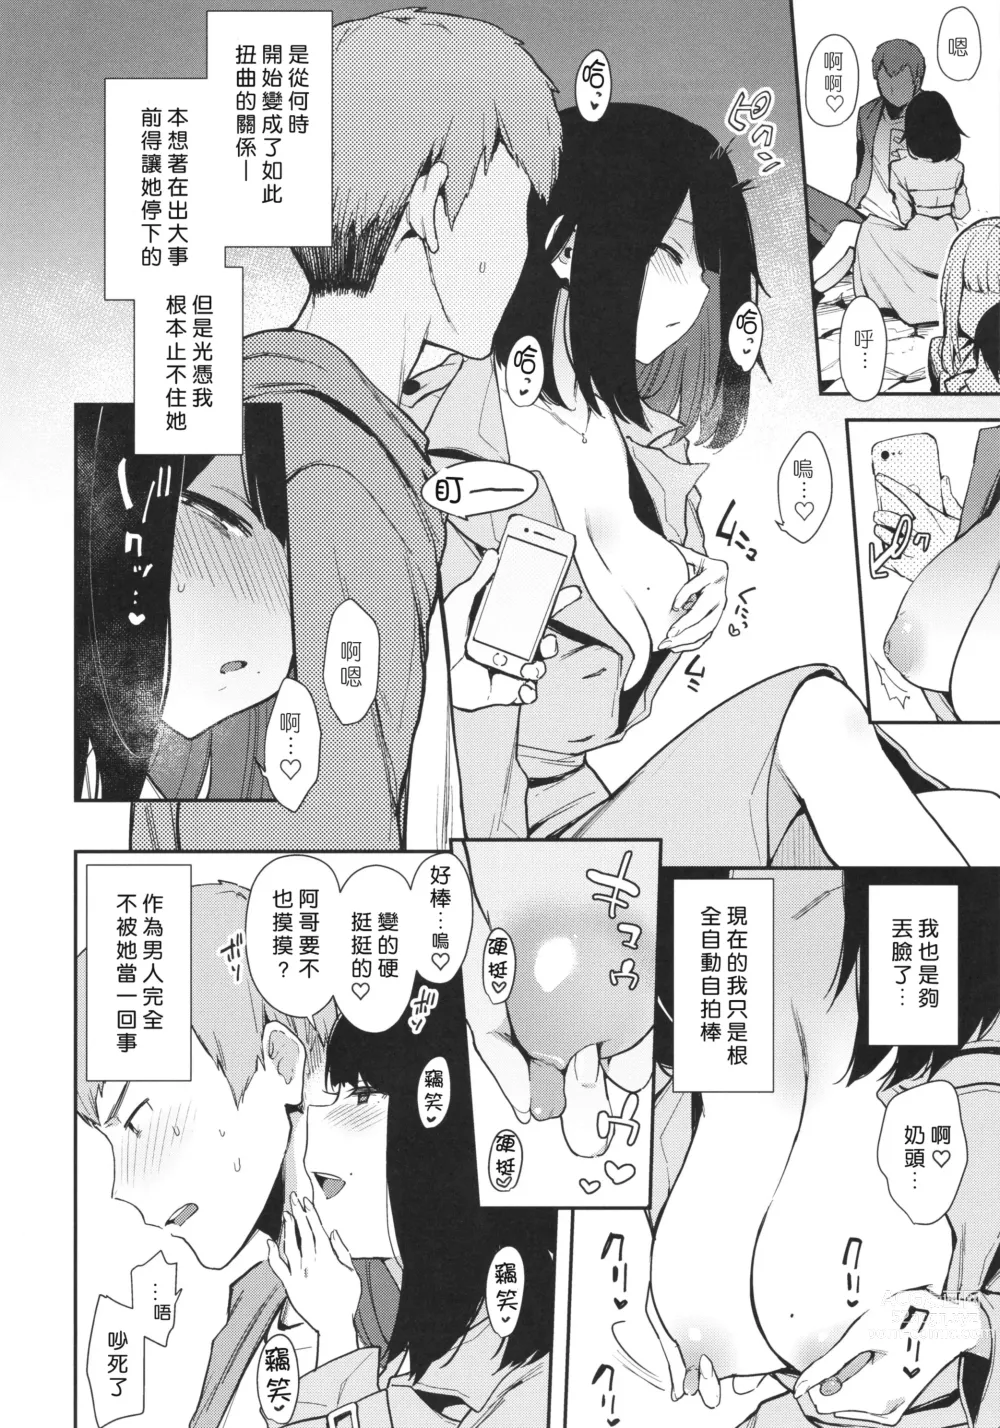 Page 9 of doujinshi Chouko I-V